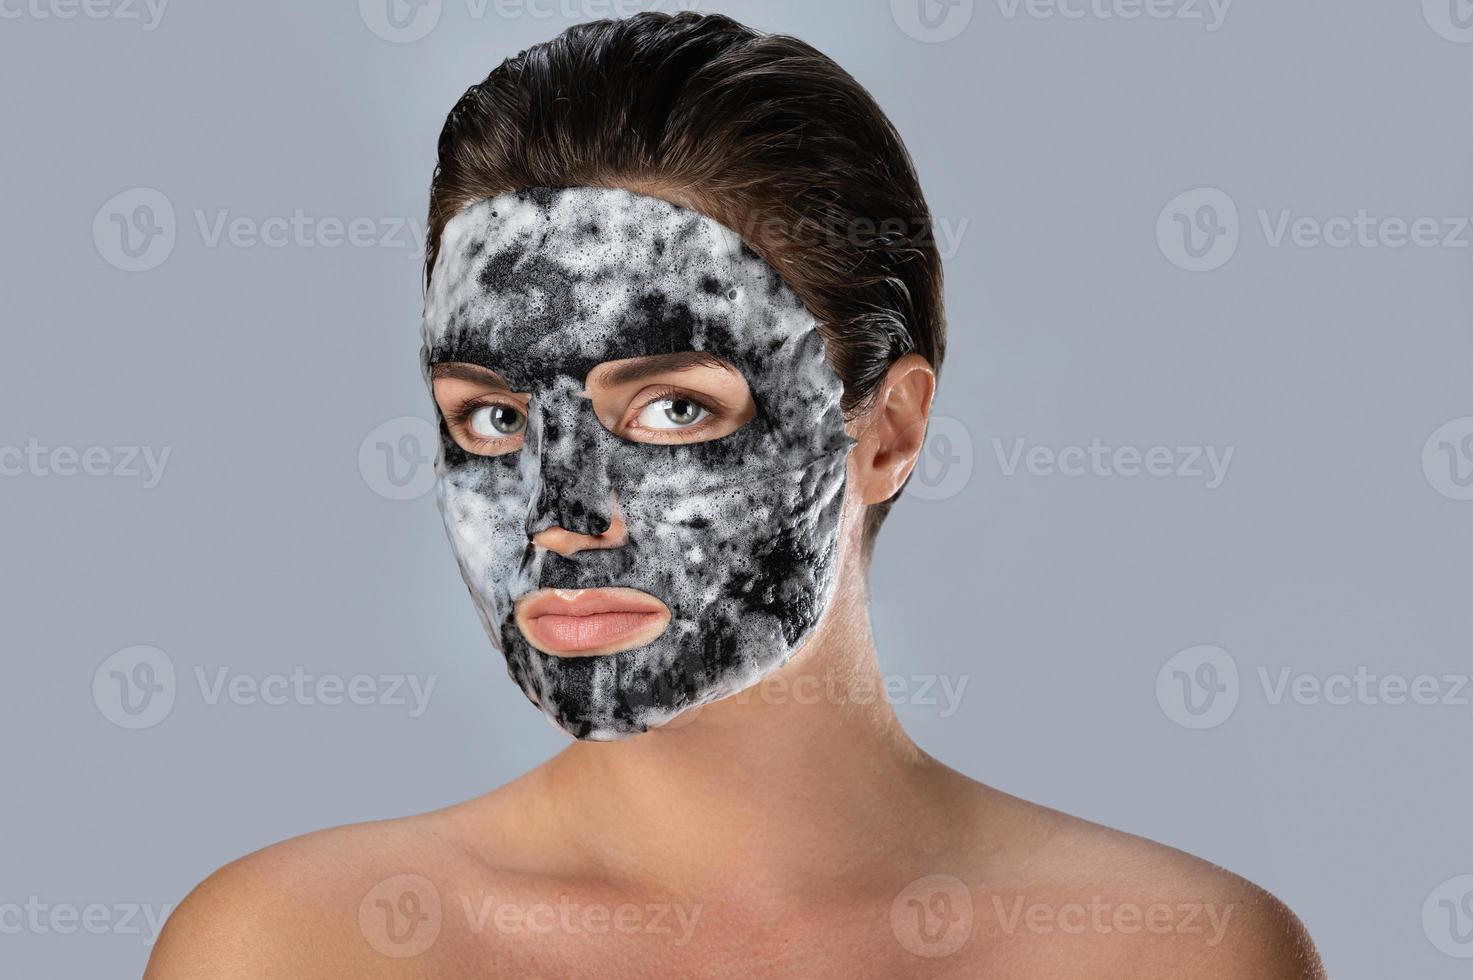 mujer con máscara de burbujas en la cara foto